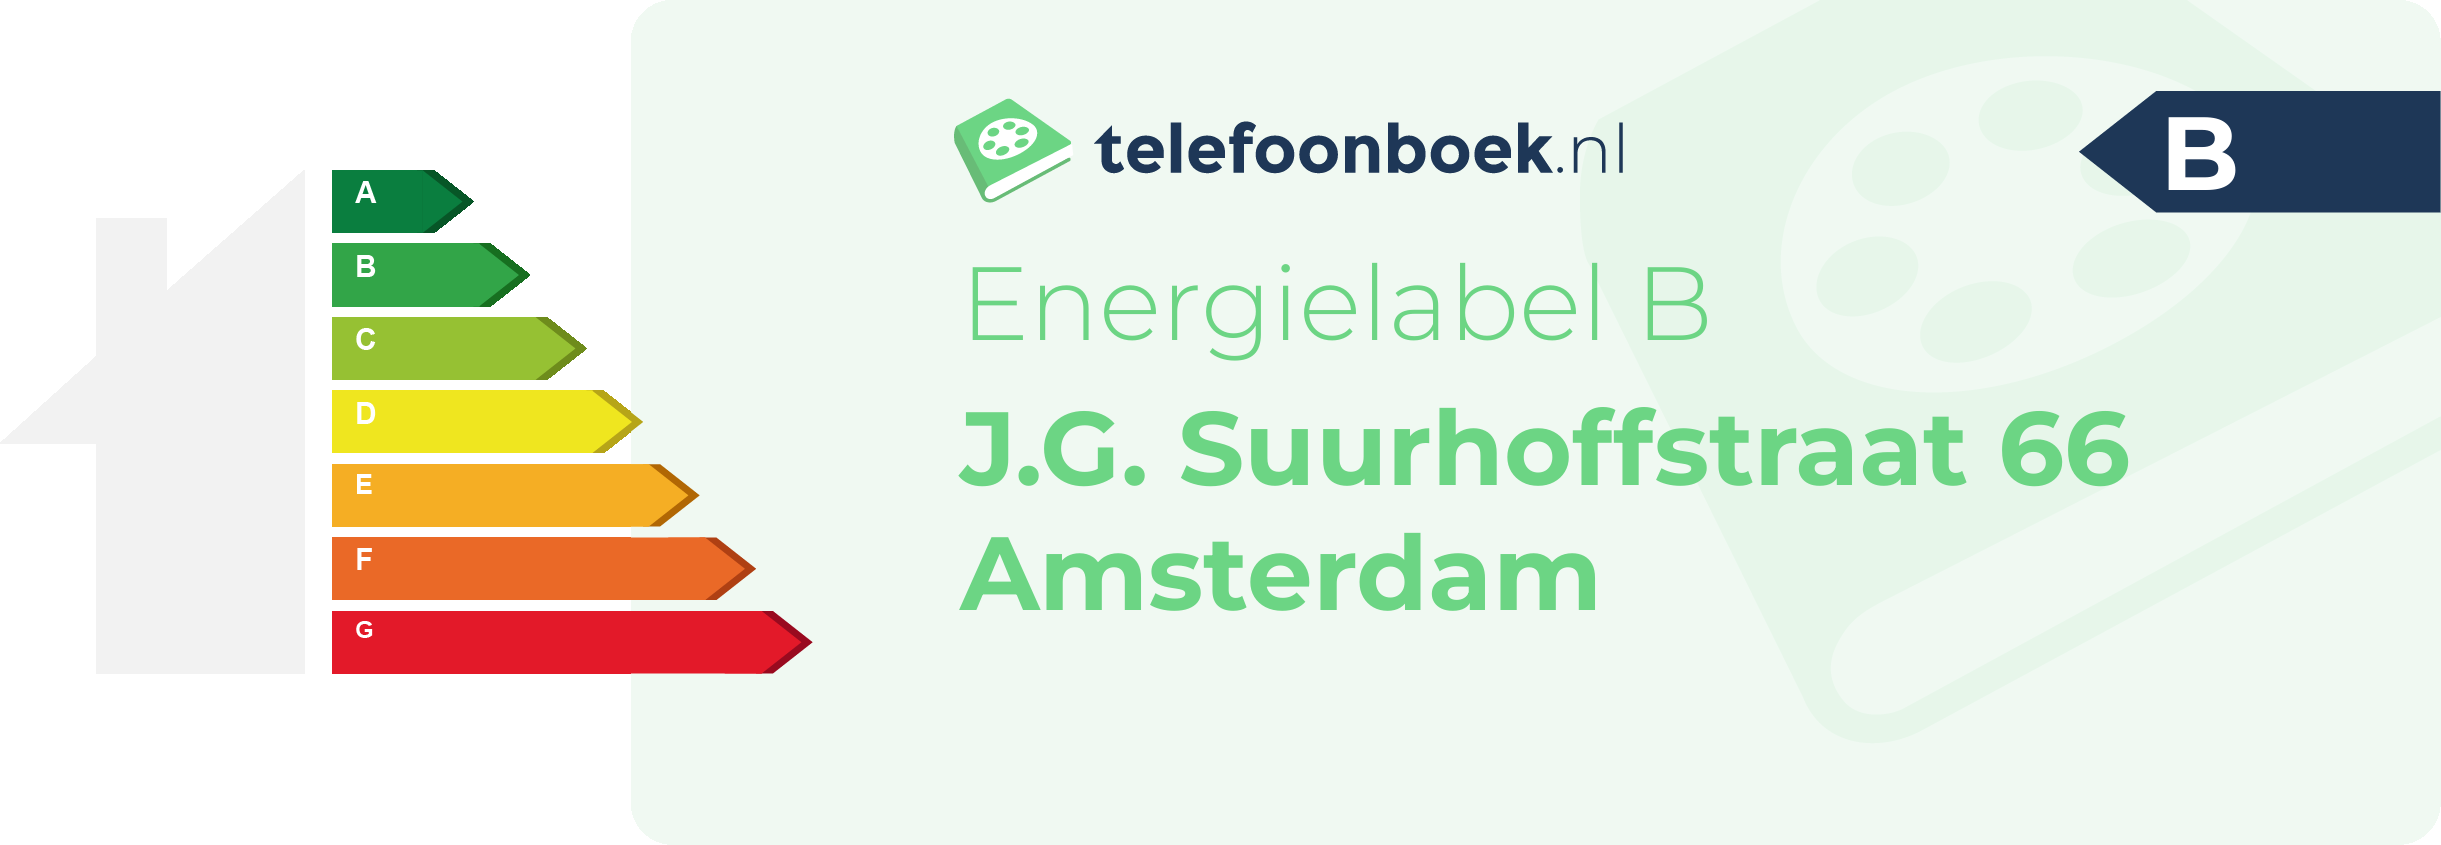 Energielabel J.G. Suurhoffstraat 66 Amsterdam